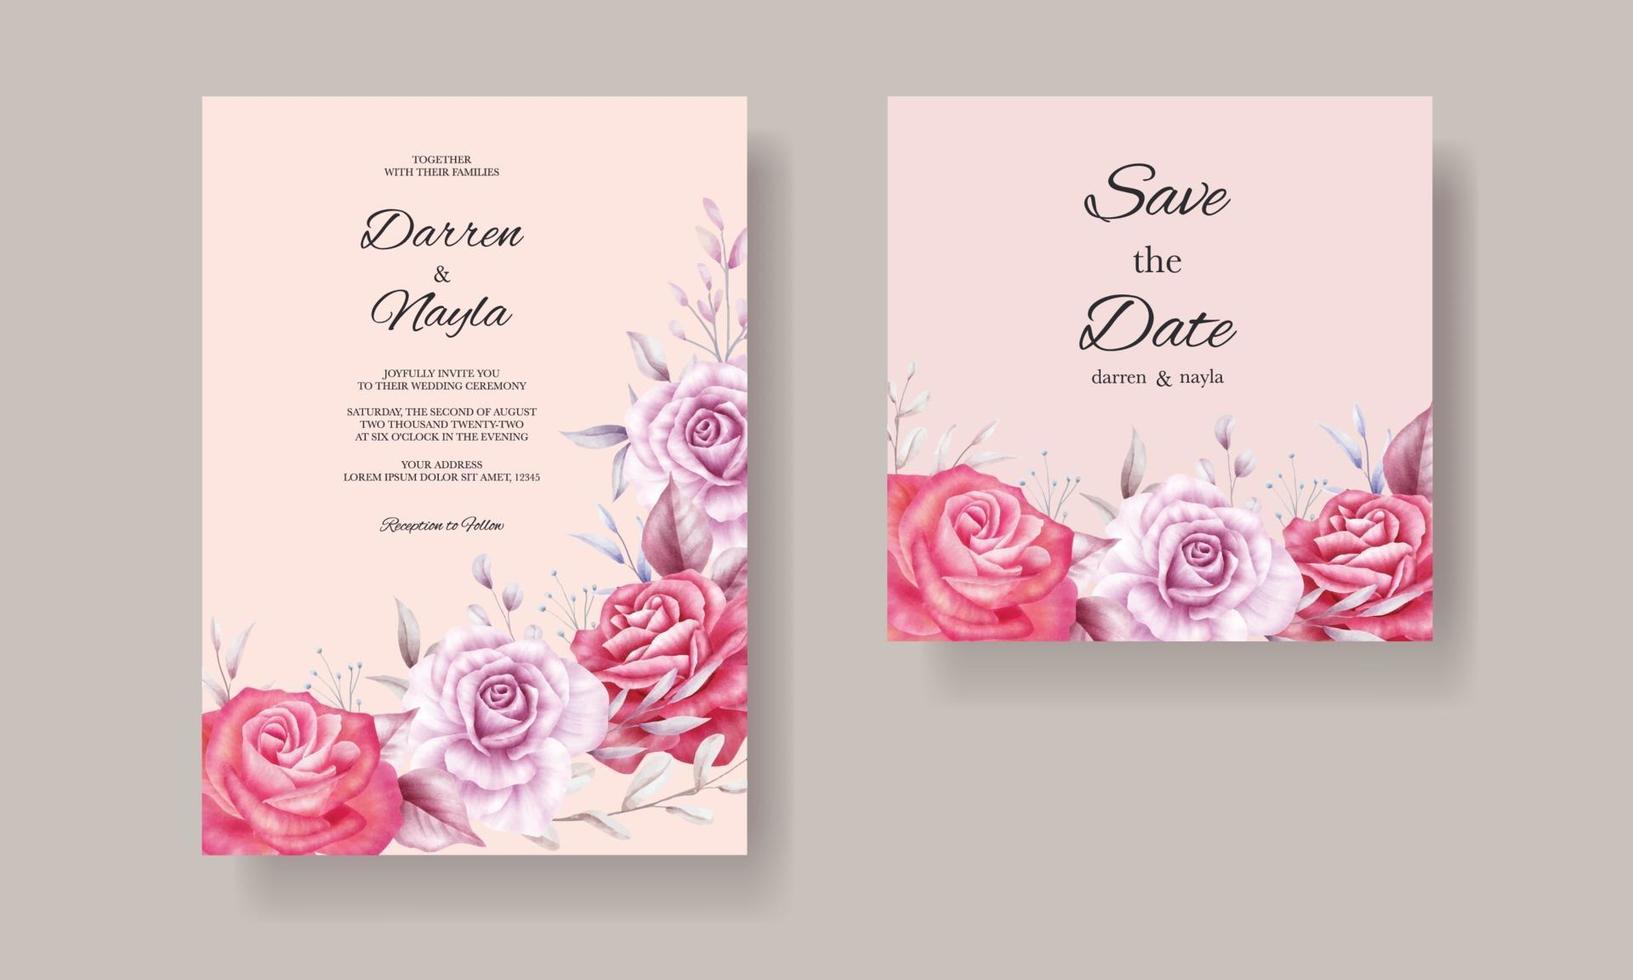 modello di biglietto di invito di matrimonio romantico con fiori ad acquerello vettore